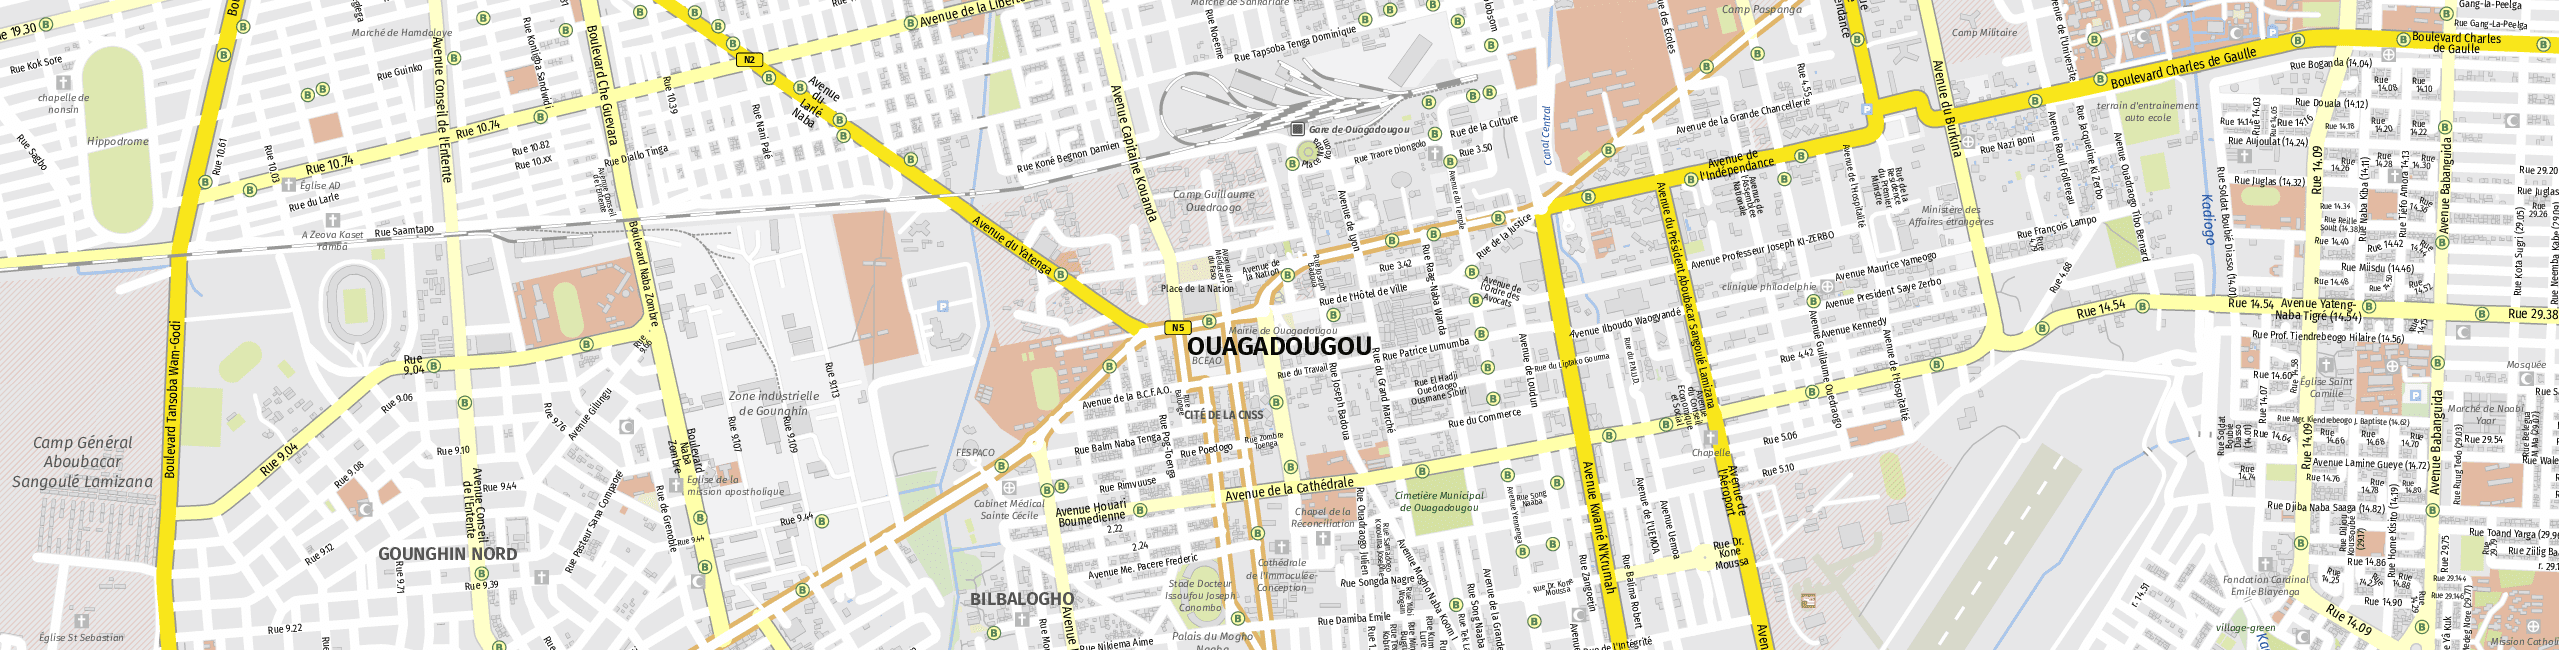 Stadtplan Ouagadougou zum Downloaden.